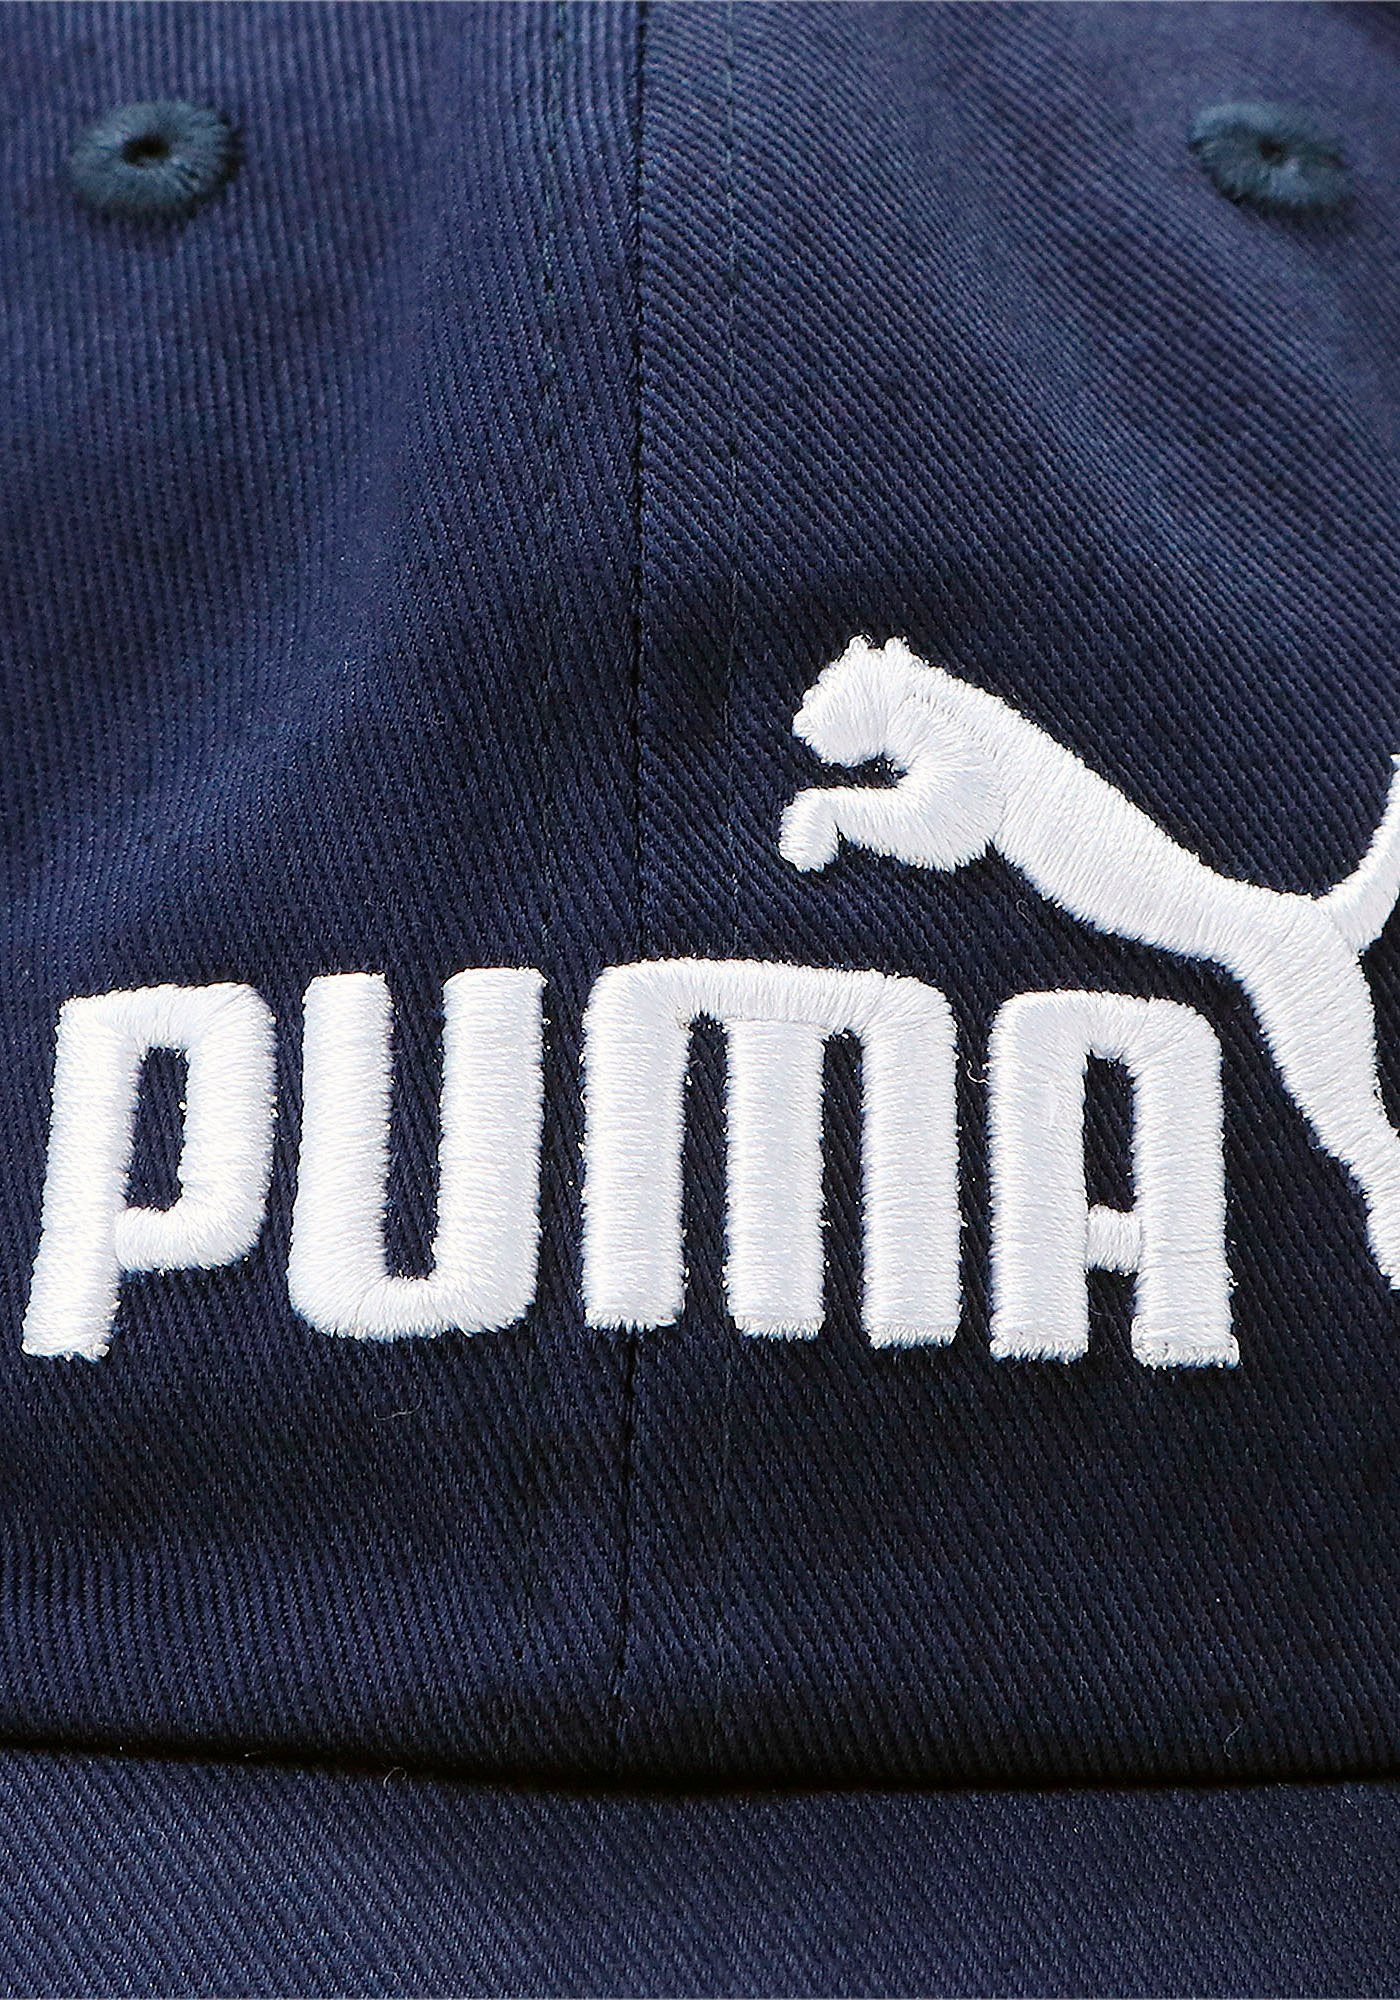 PUMA Baseball Cap ESS peacoat-No.1 CAP